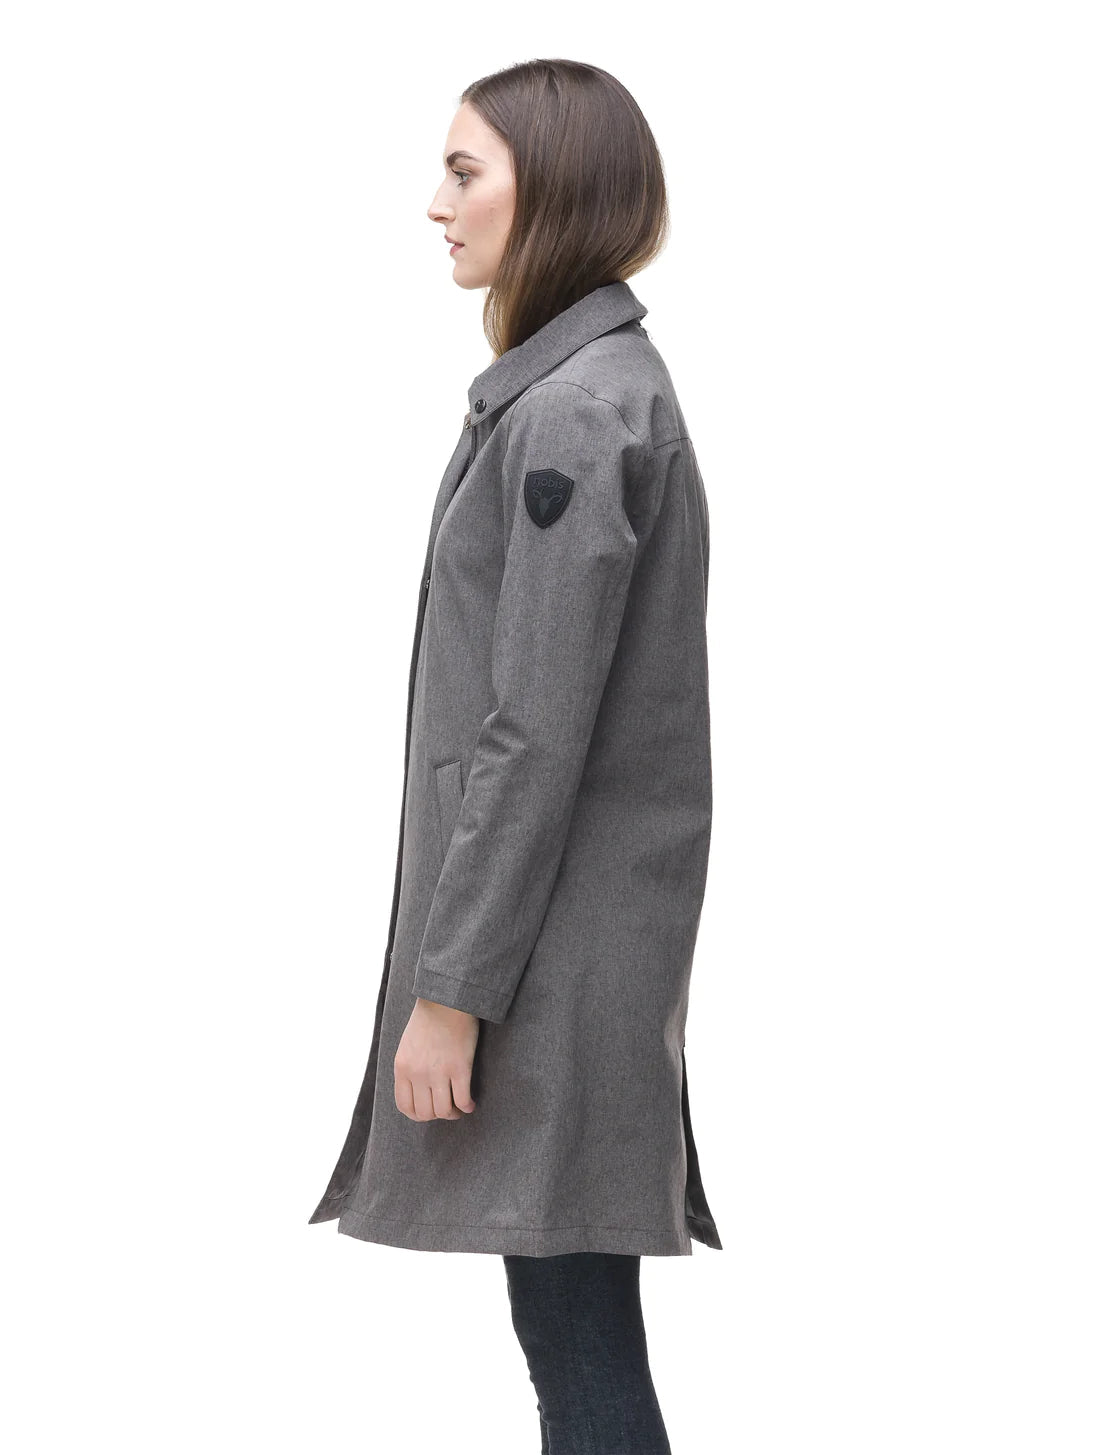 NOBIS MANHATTAN LEGACY - Women's Raincoat - FINAL SALE - Boutique Bubbles